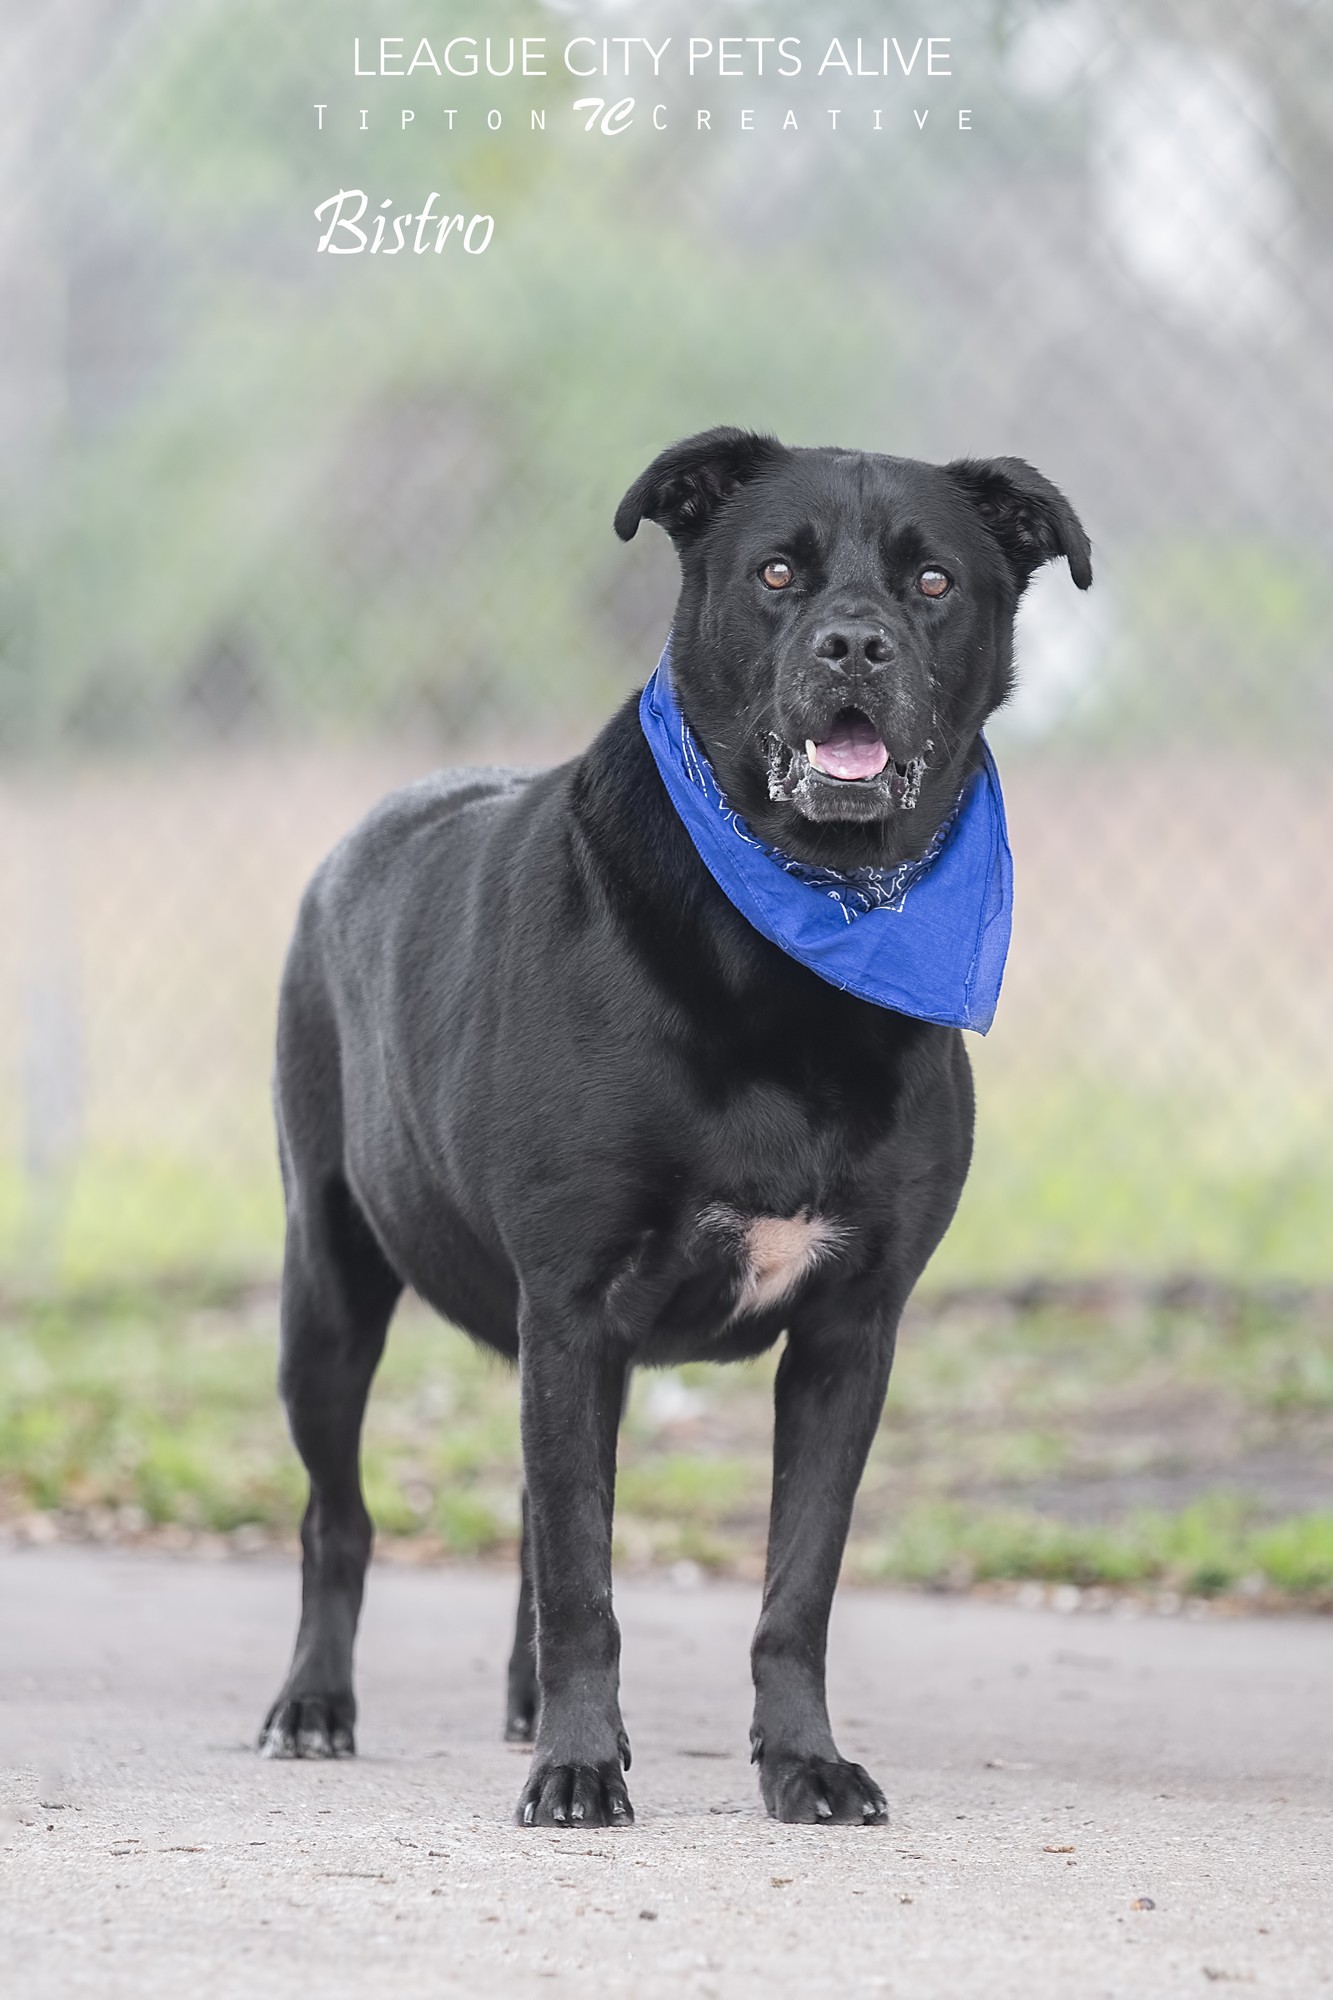 Bistro, an adoptable Labrador Retriever in League City, TX, 77573 | Photo Image 2